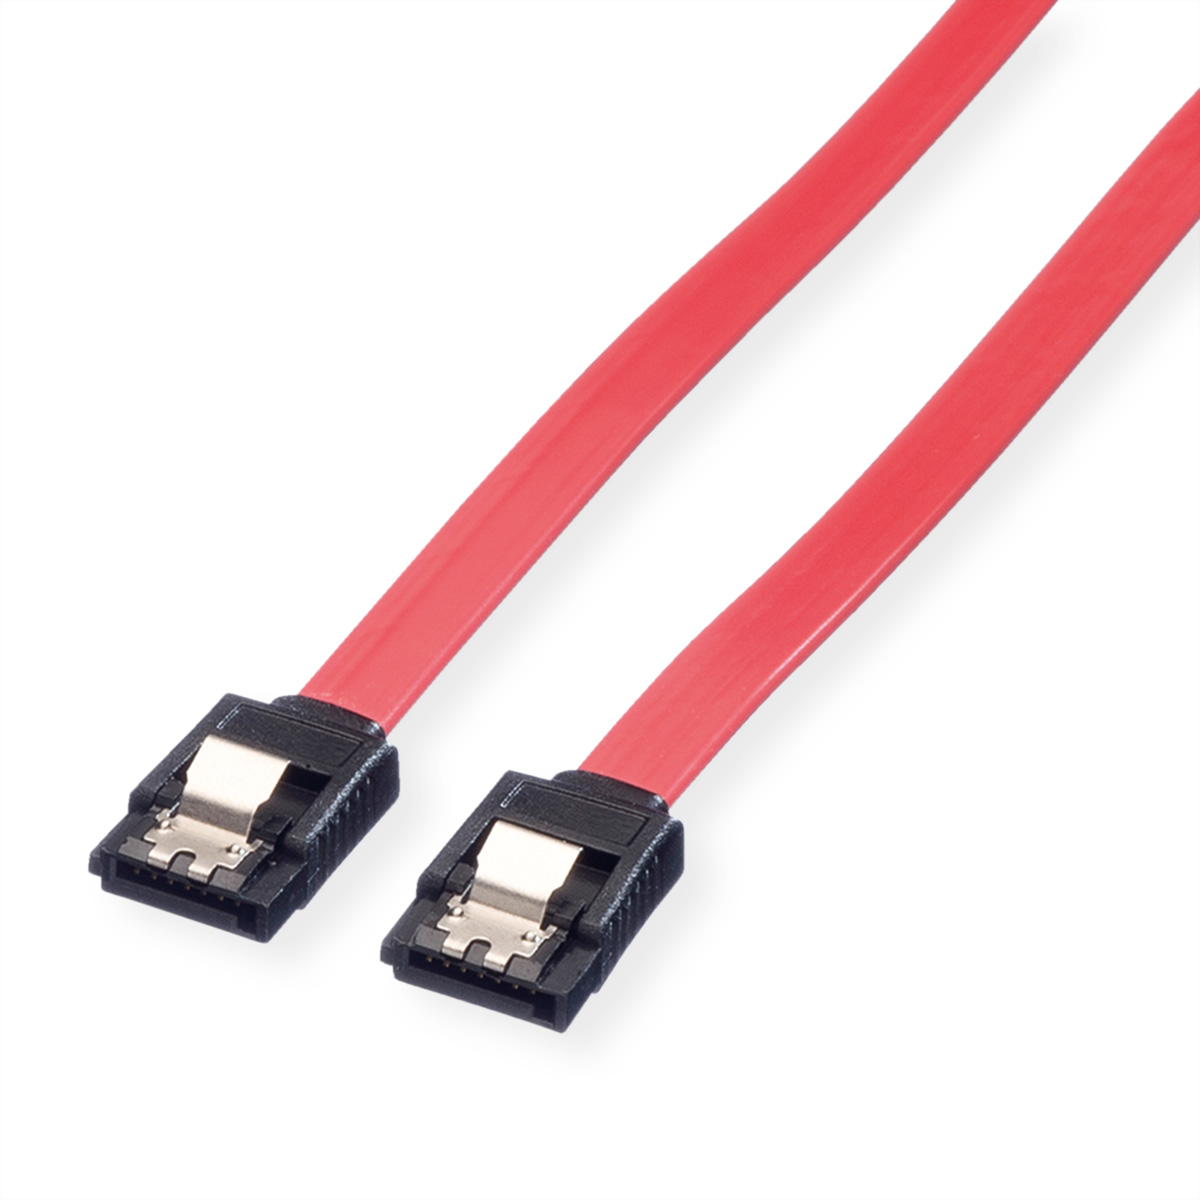 1 Internes VALUE 6.0 mit Schnappverschluss, Gbit/s SATA-Kabel, m HDD-Kabel SATA